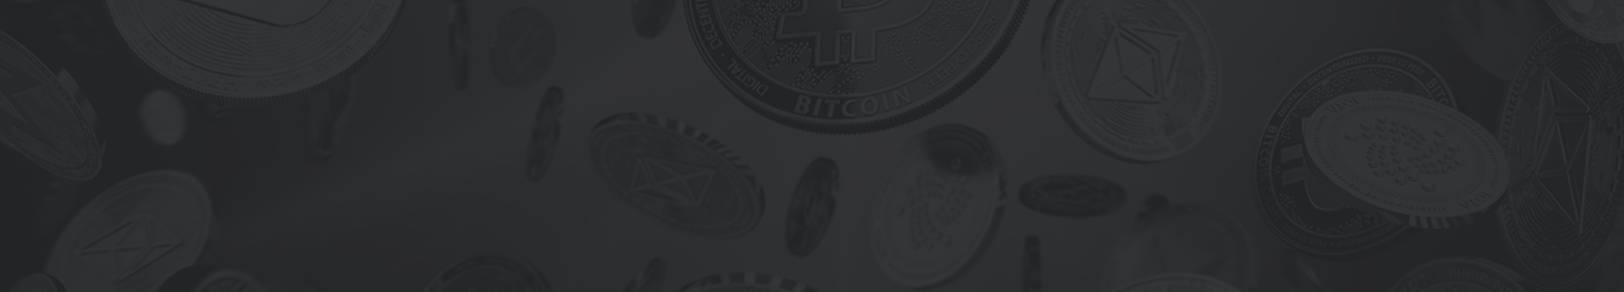 Bitcoin Machine - Încă nu te-ai alăturat Bitcoin Machine?